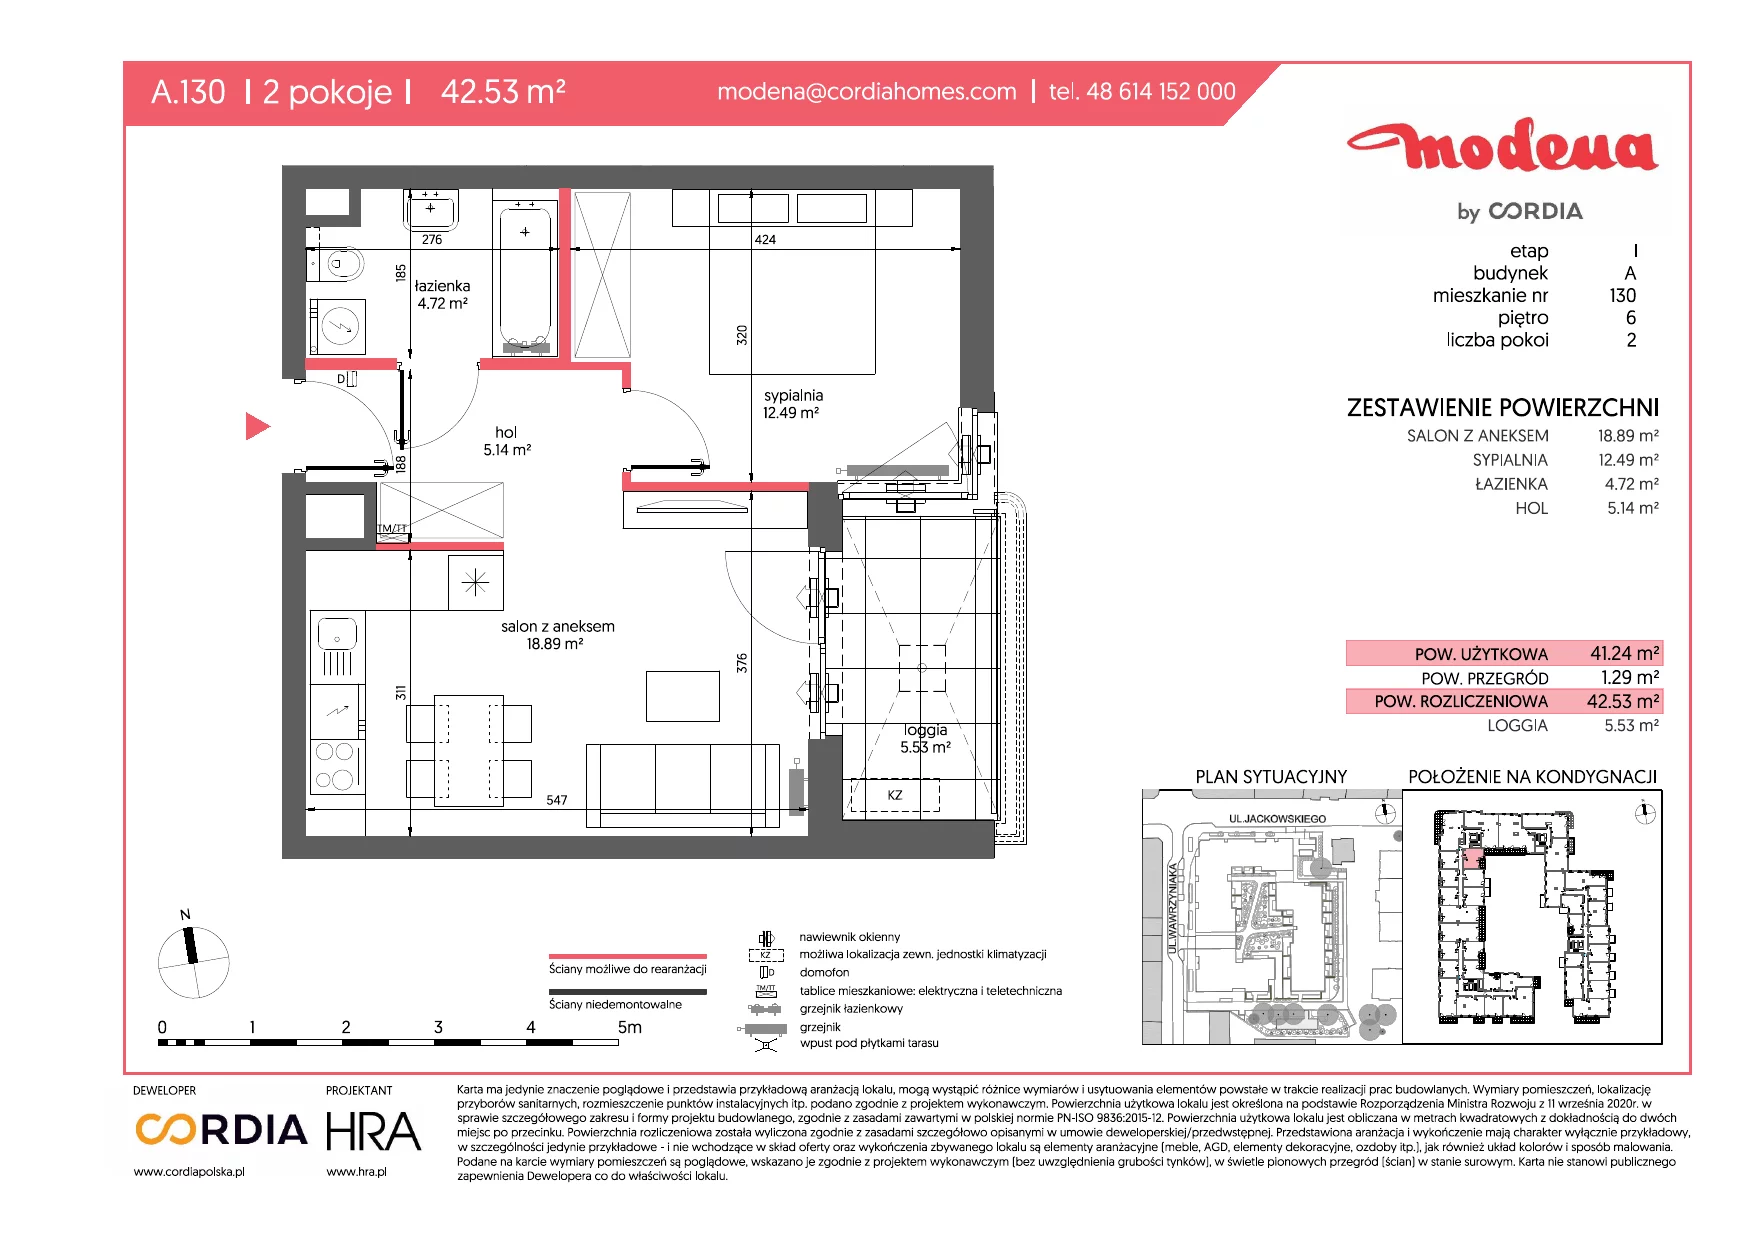 Mieszkanie 42,53 m², piętro 6, oferta nr A.130, Modena, Poznań, Jeżyce, Jeżyce, ul. Jackowskiego 24